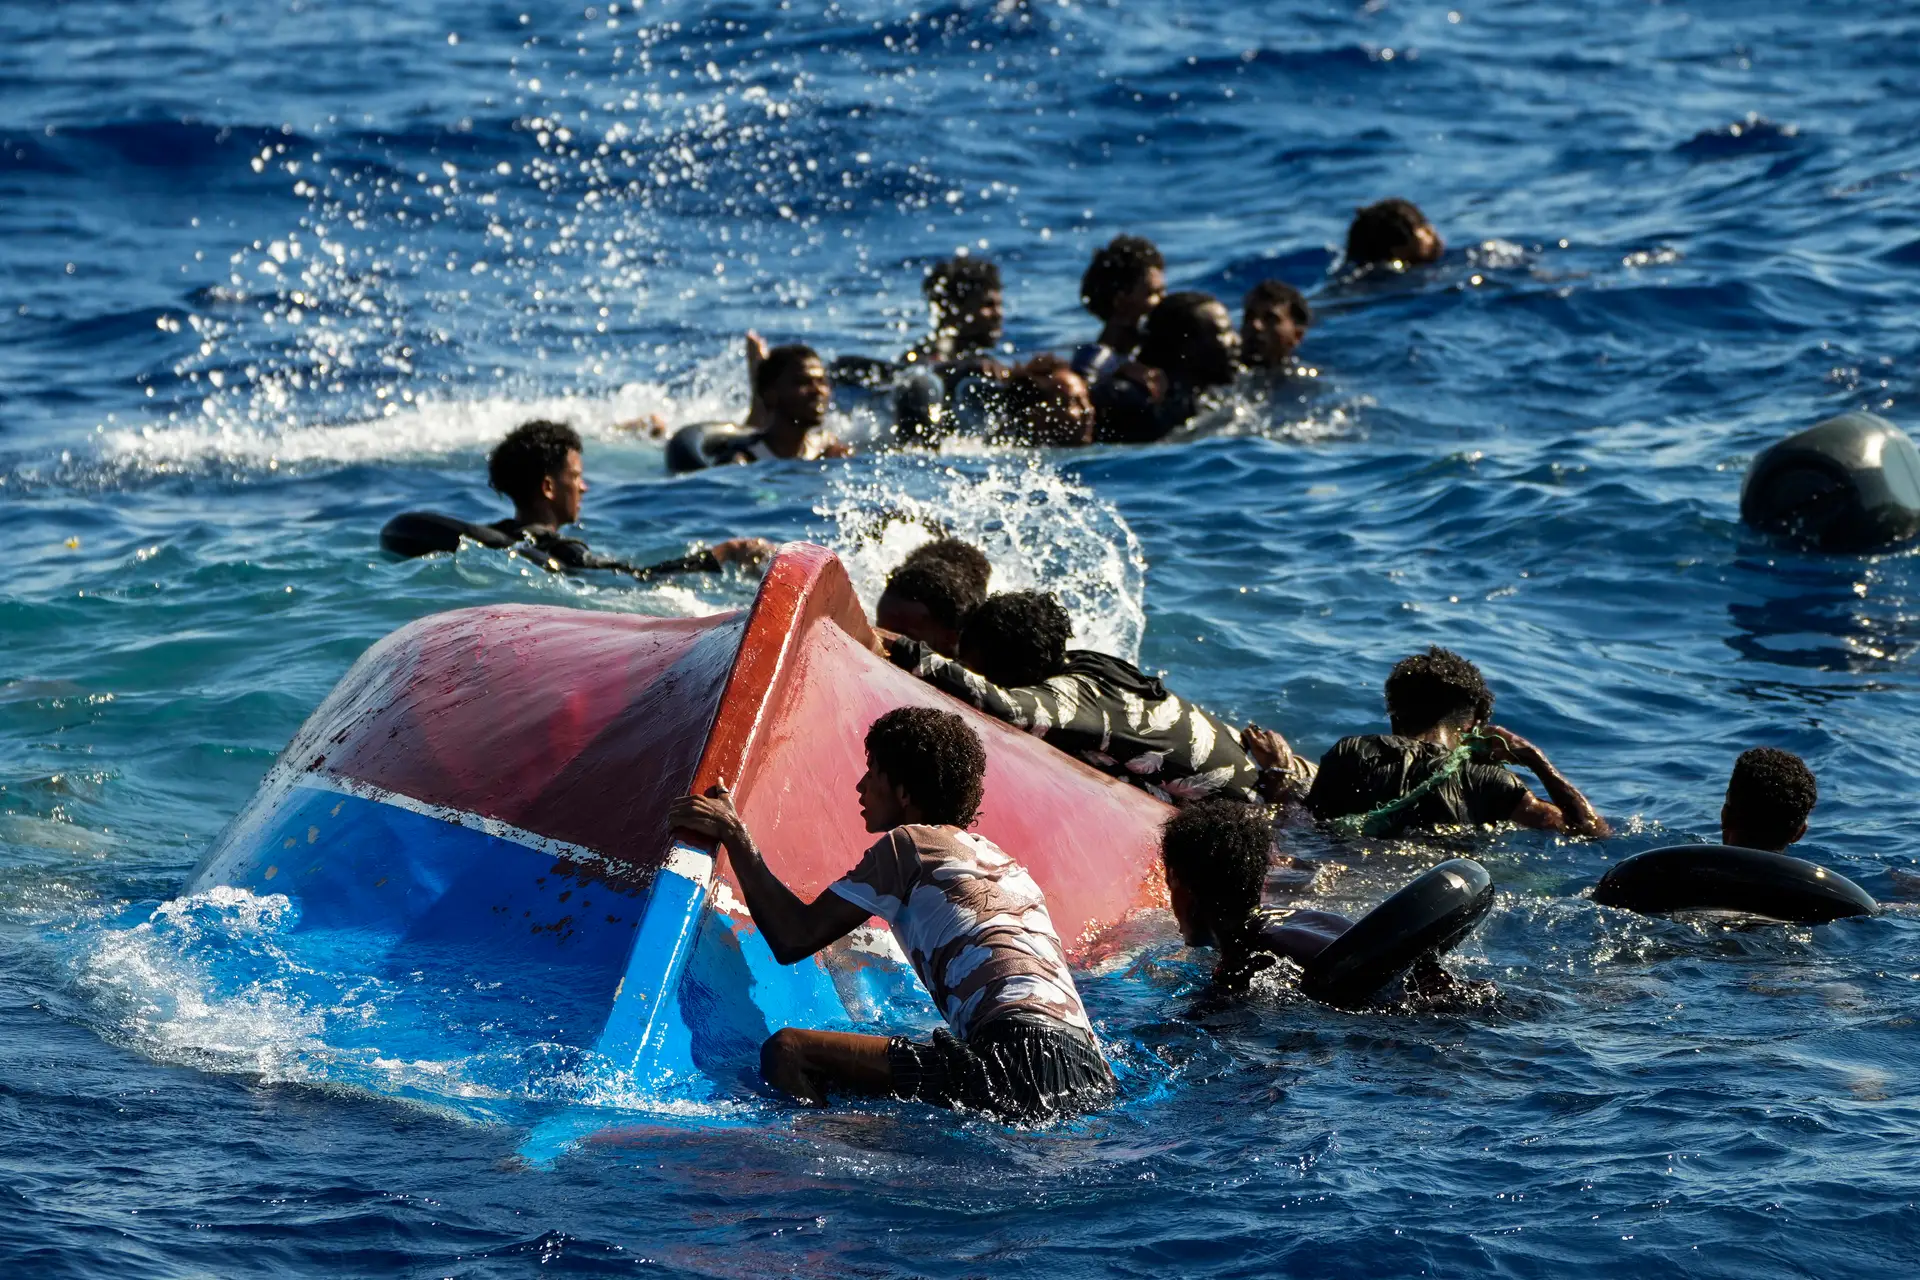 Mais de 3.000 migrantes amontoados no centro de acolhimento de Lampedusa